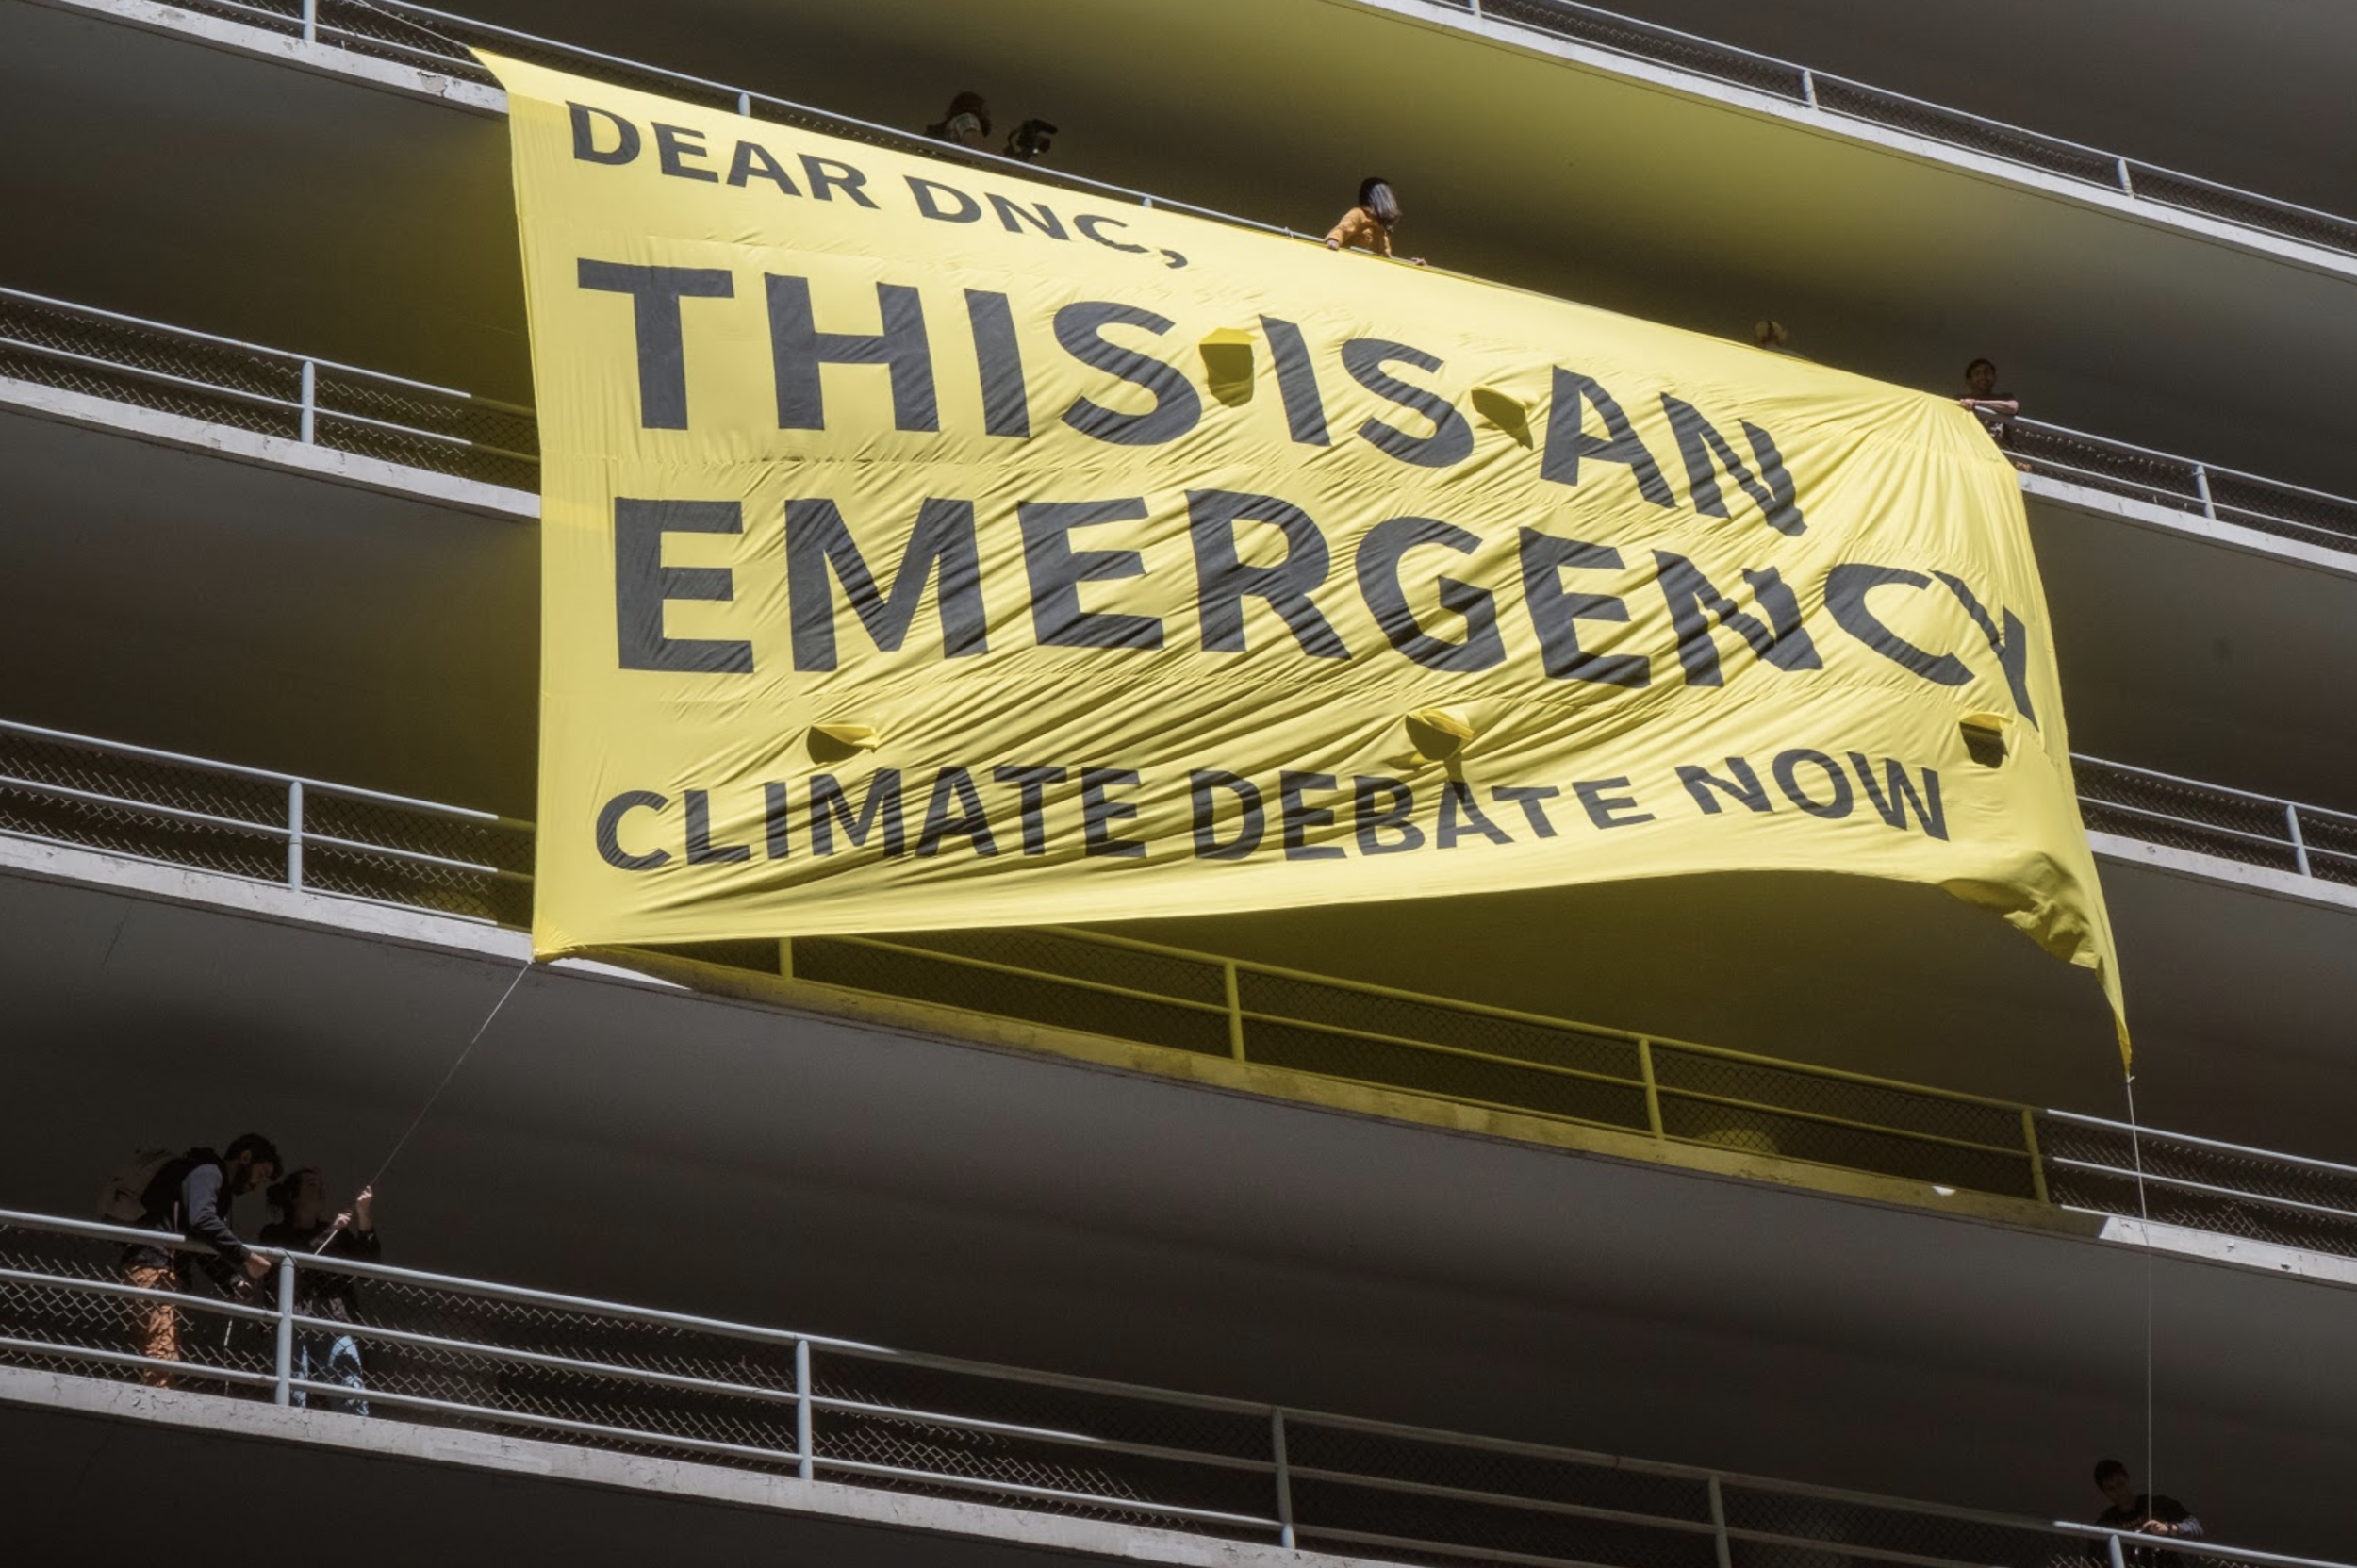 DNC Climate Debate, SF, 2019